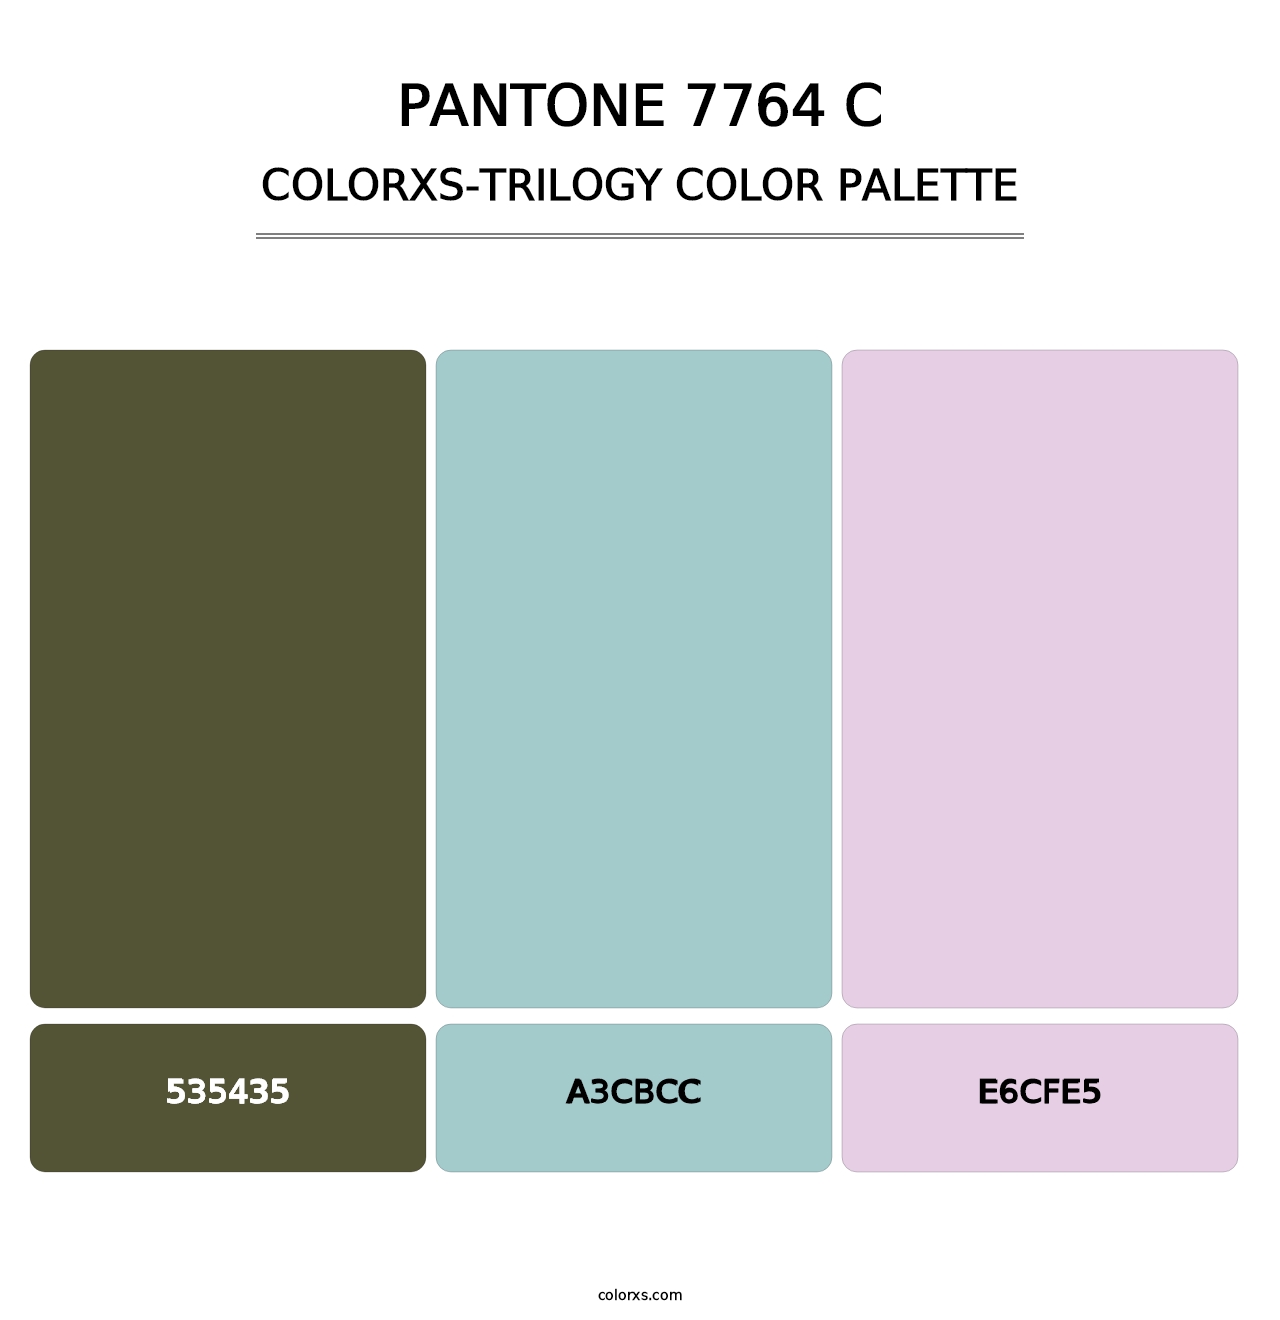 PANTONE 7764 C - Colorxs Trilogy Palette